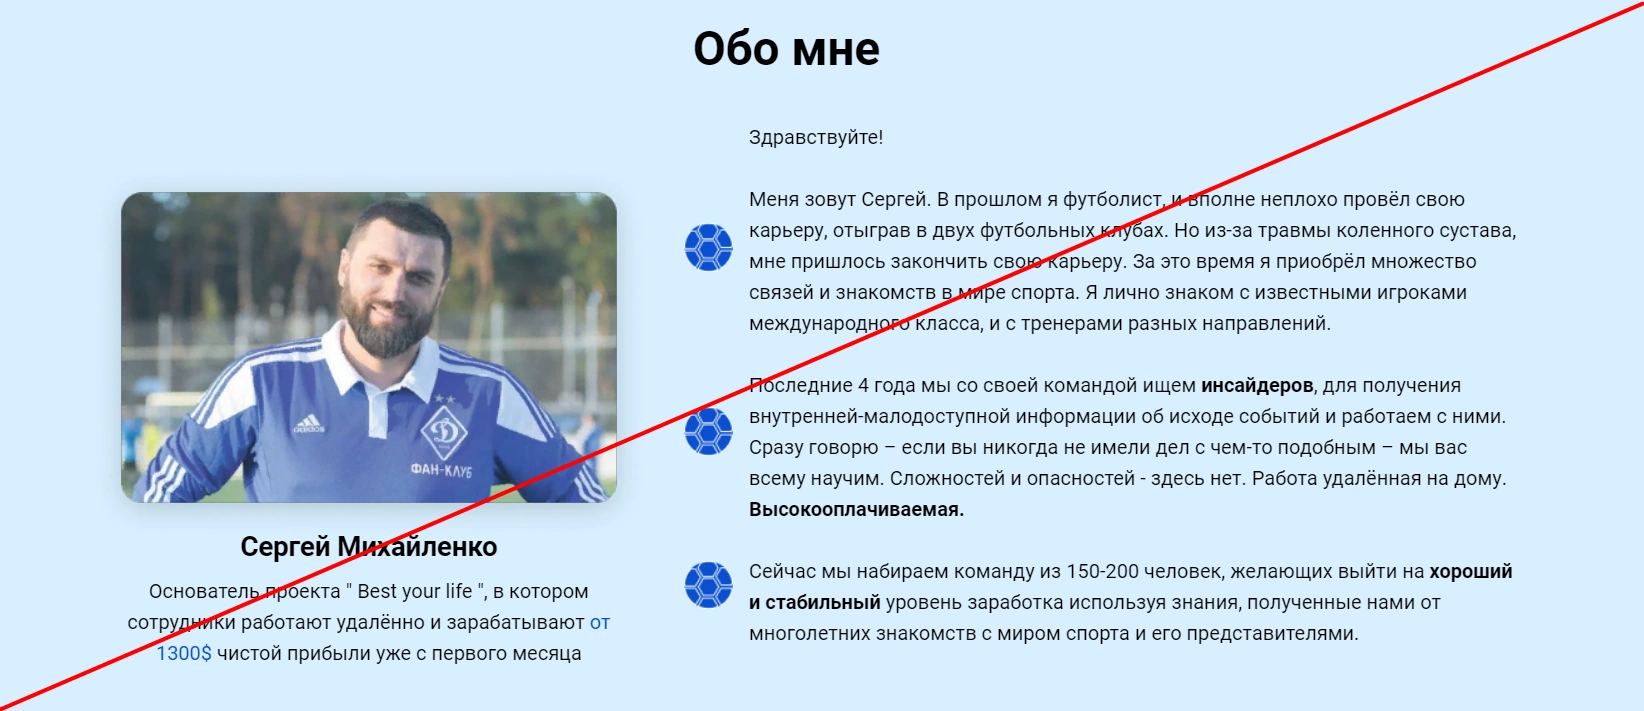 Сергей Михайленко и его ставки на спорт обман